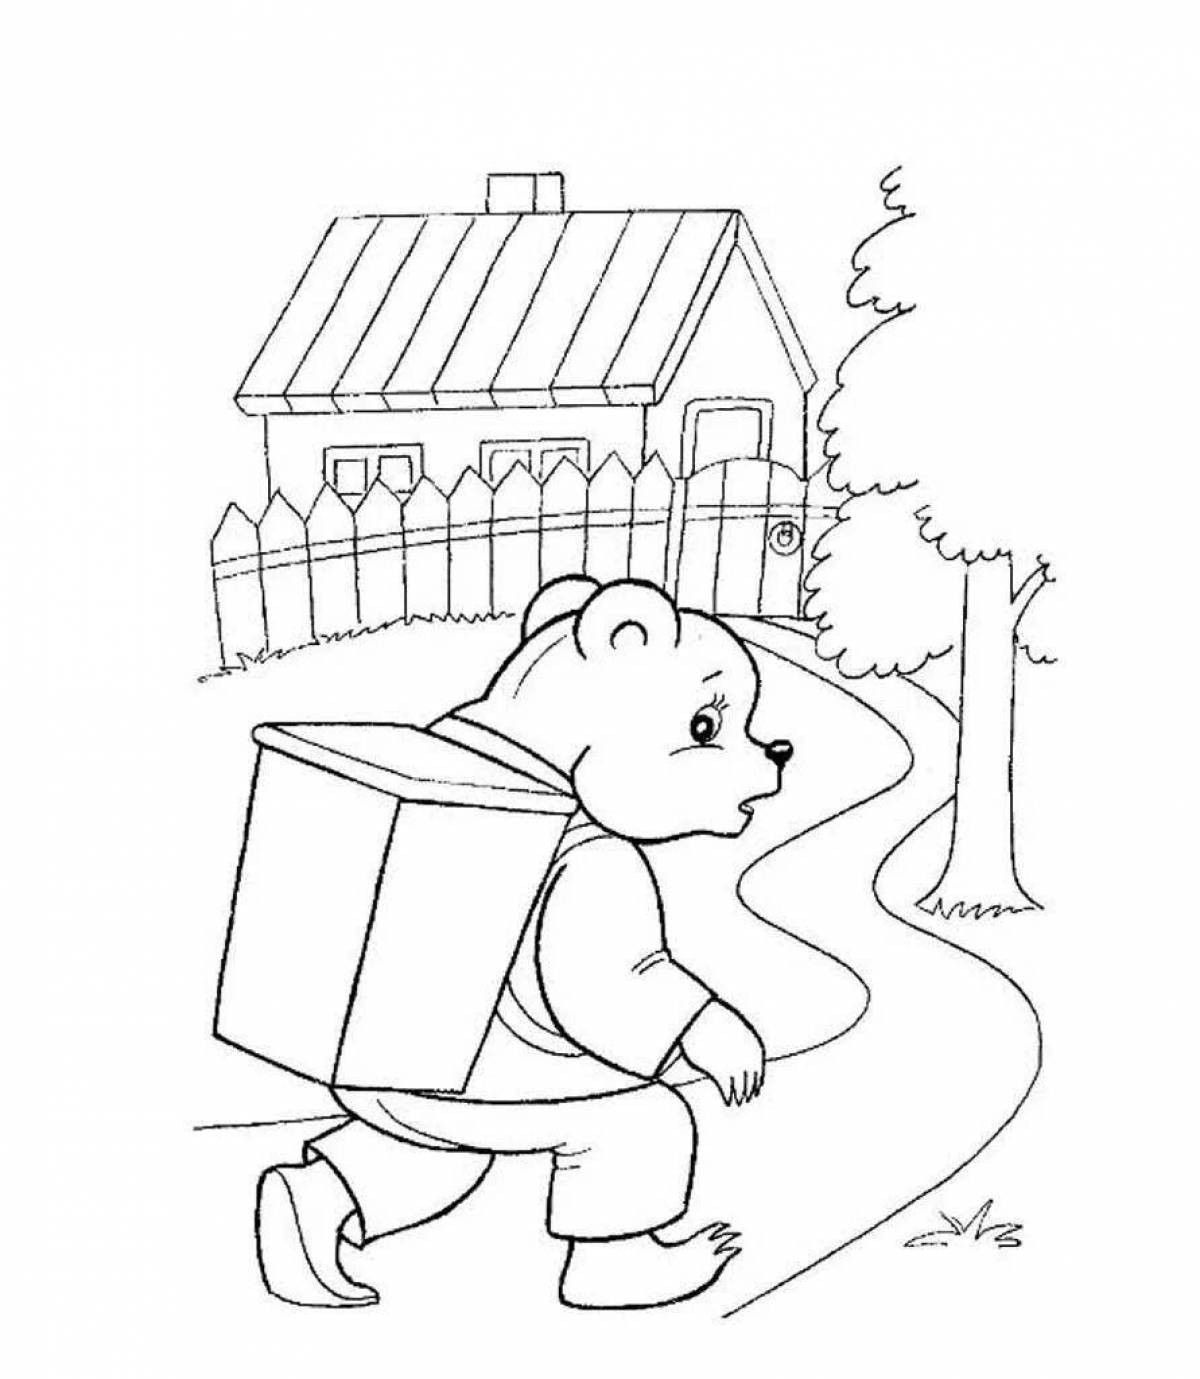 Magic masha and the bear coloring book